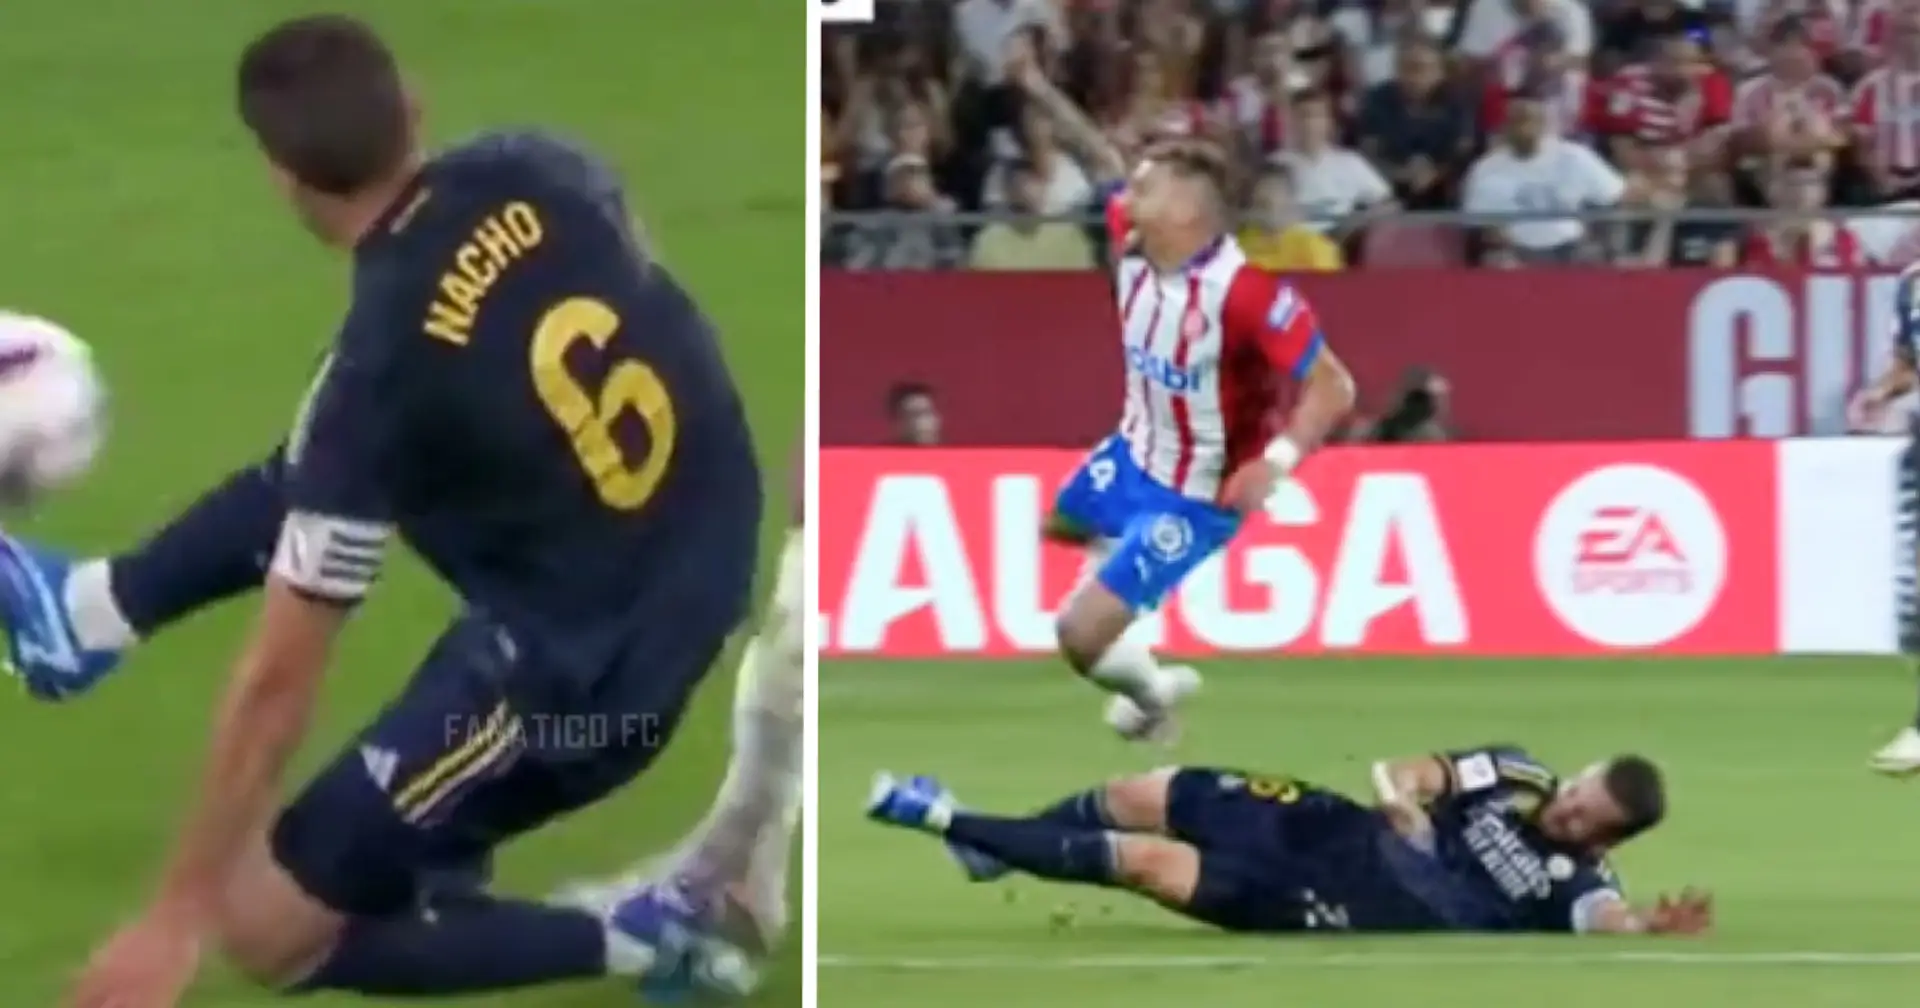 Real Madrid appeals Nacho brutal red card – La Liga ruling revealed